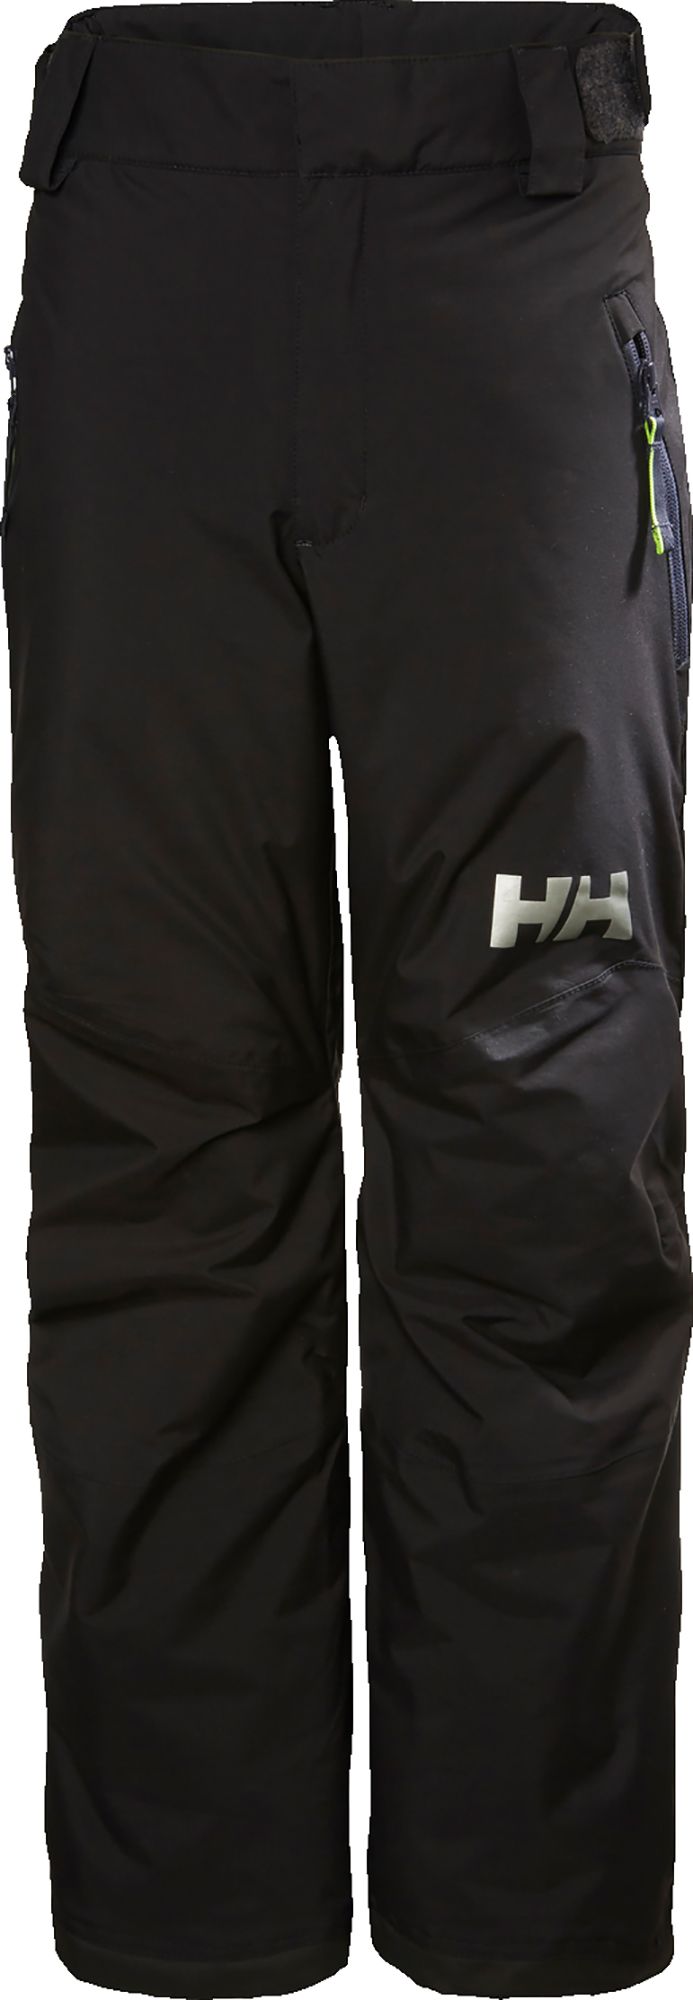 Photos - Ski Wear Helly Hansen Junior's Legendary Pants, Boys', Size 16, Black 21HLYYYLGNDRY 